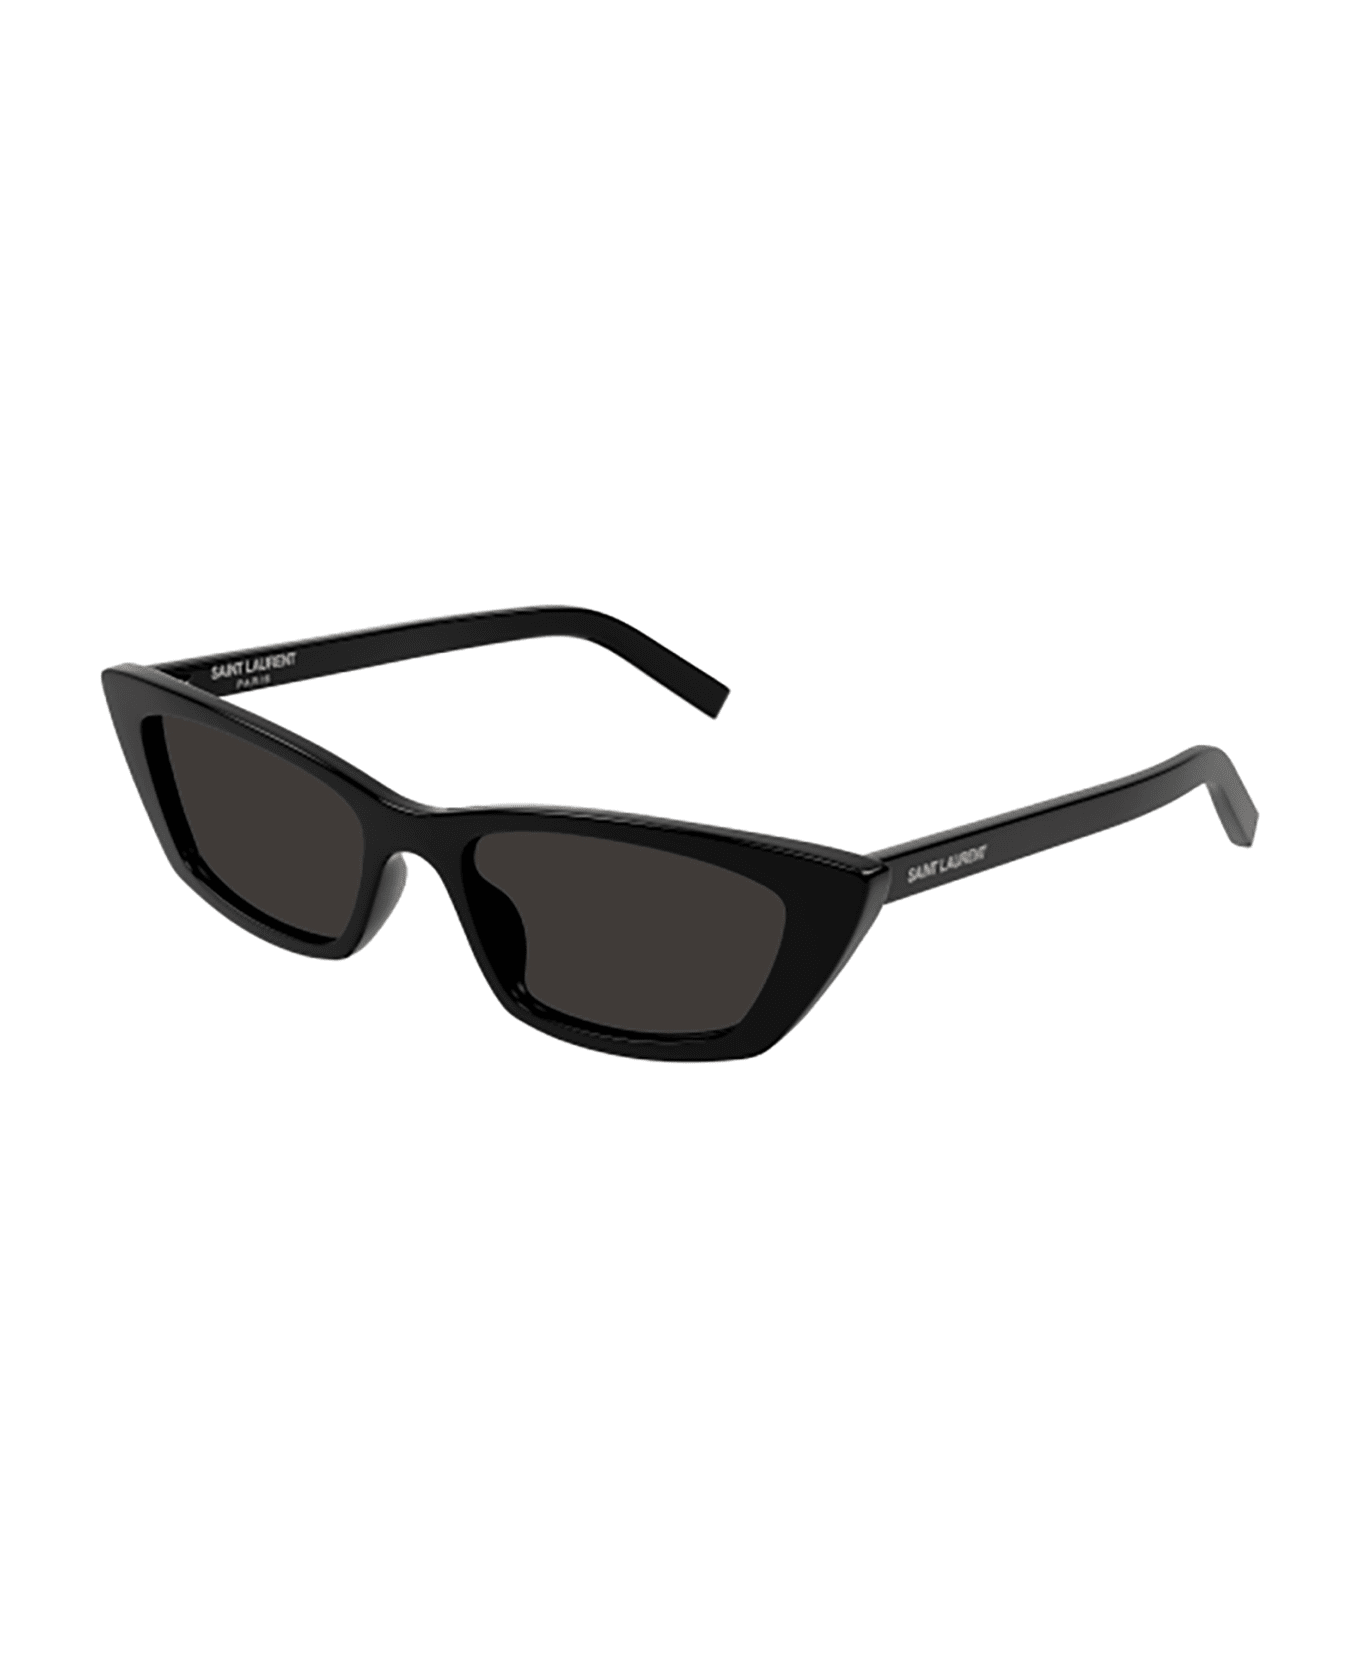 Saint Laurent Eyewear SL 277 Sunglasses - Black Black Black